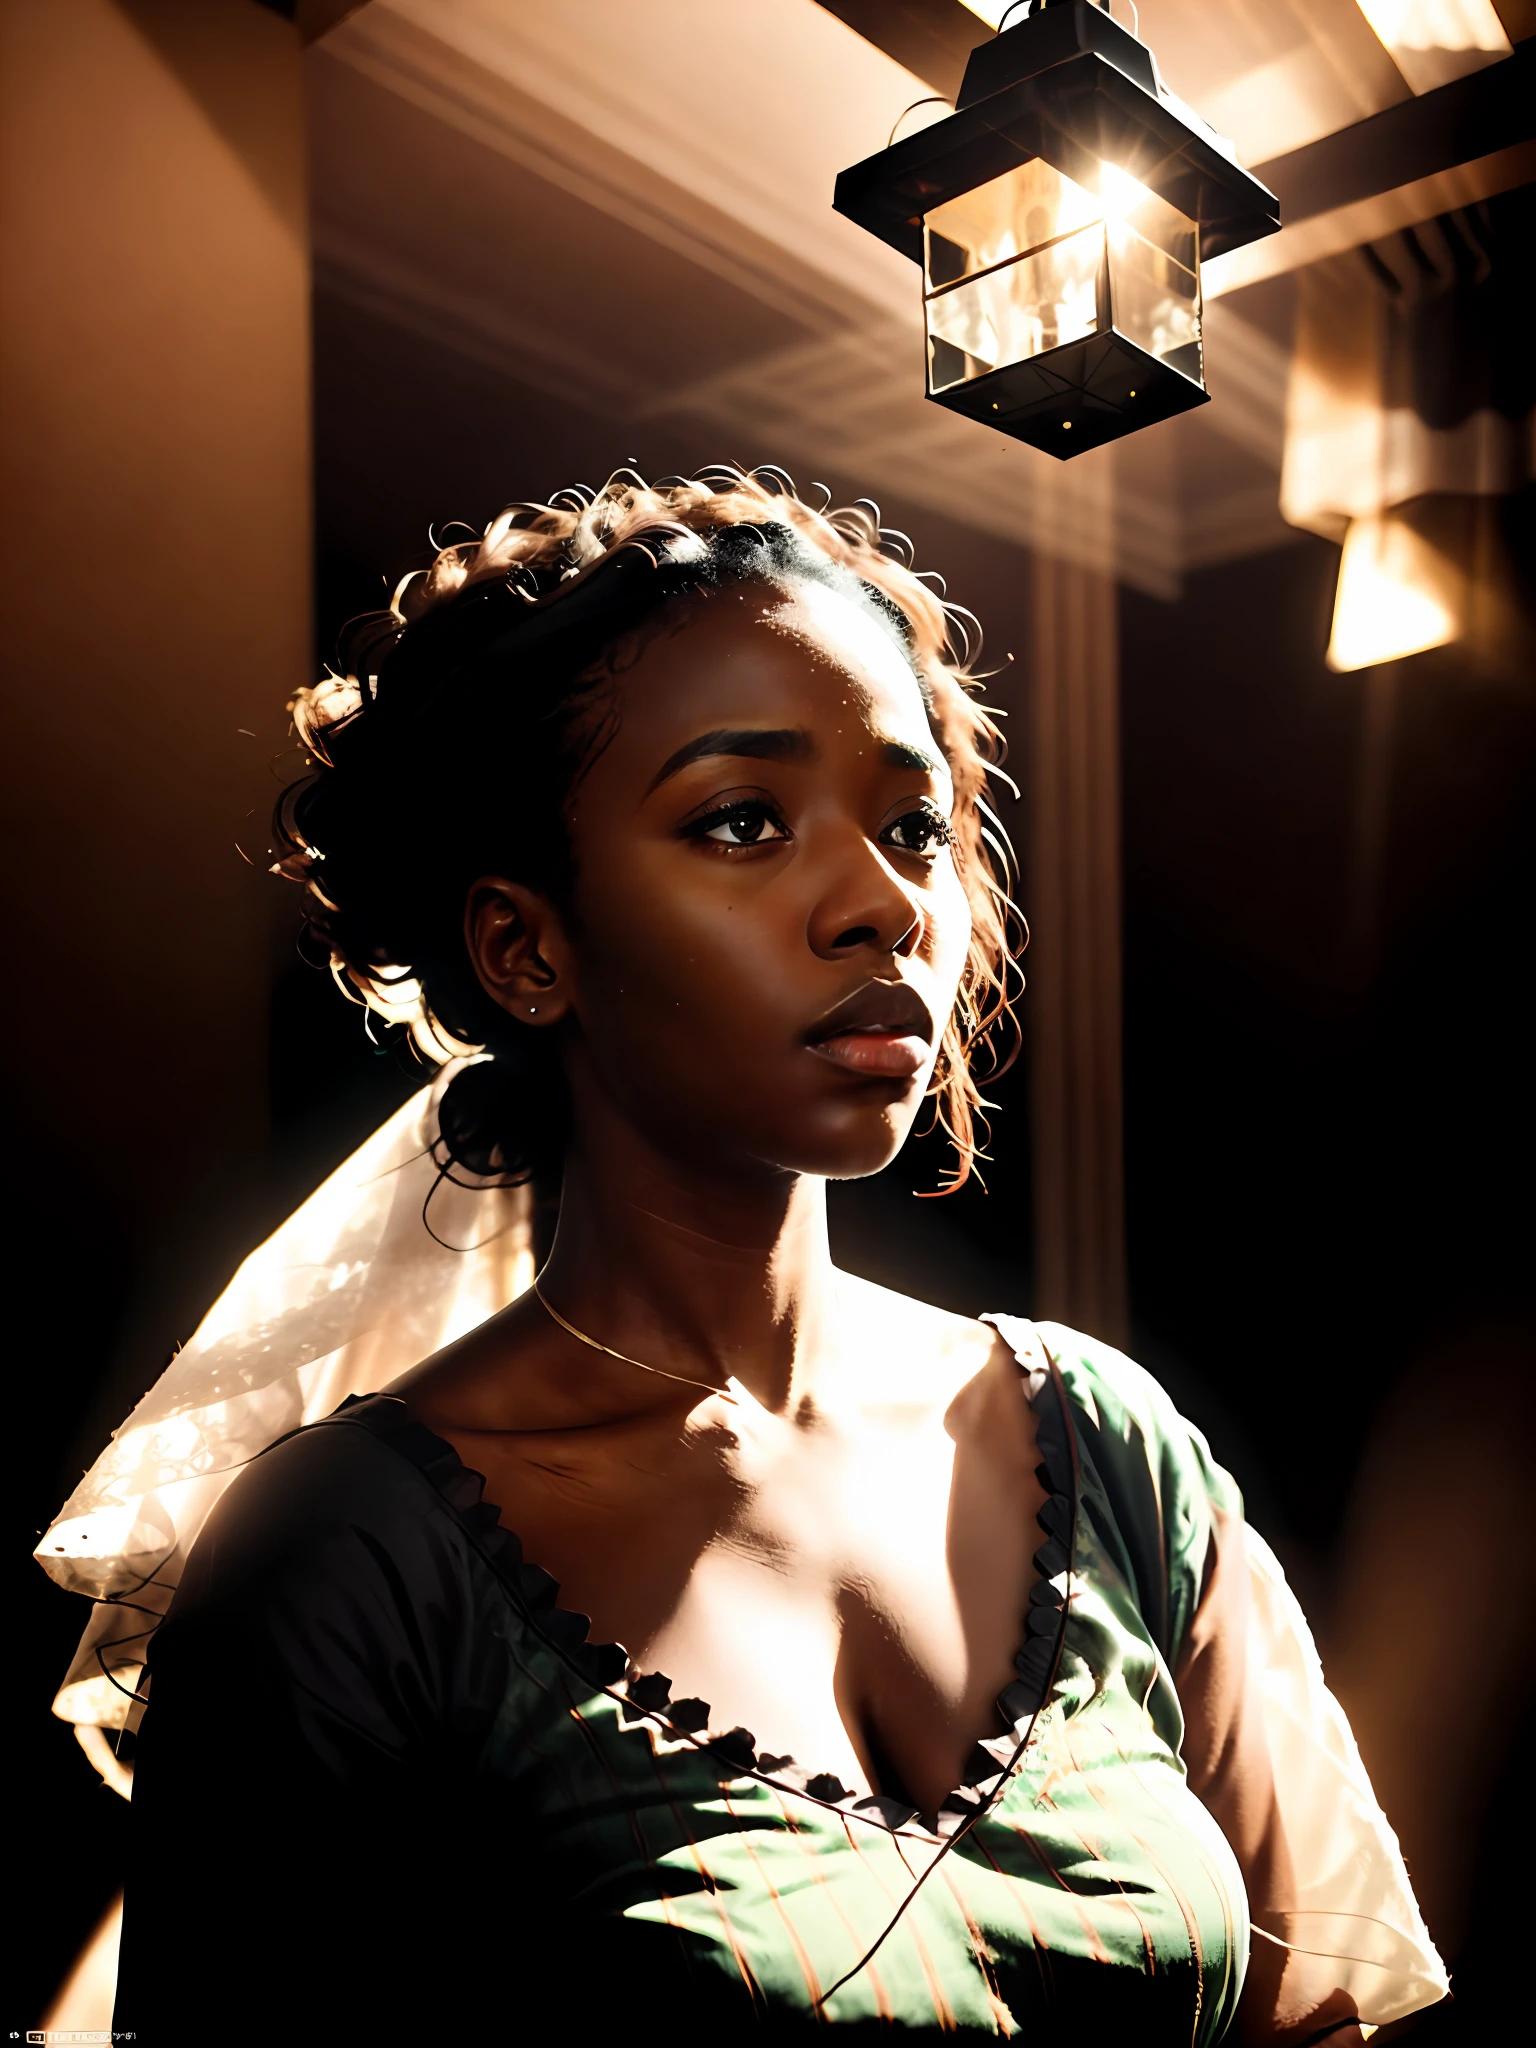 аналоговый фотографический высокодетализированный кинематографический образ призрака ((темнокожий)) Африканская женщина в квартире, одетый в белое, Баухауз, гипердетализированный, зловещий, Эфирный, Драматическое освещение, Мягкий контраст, блеклый